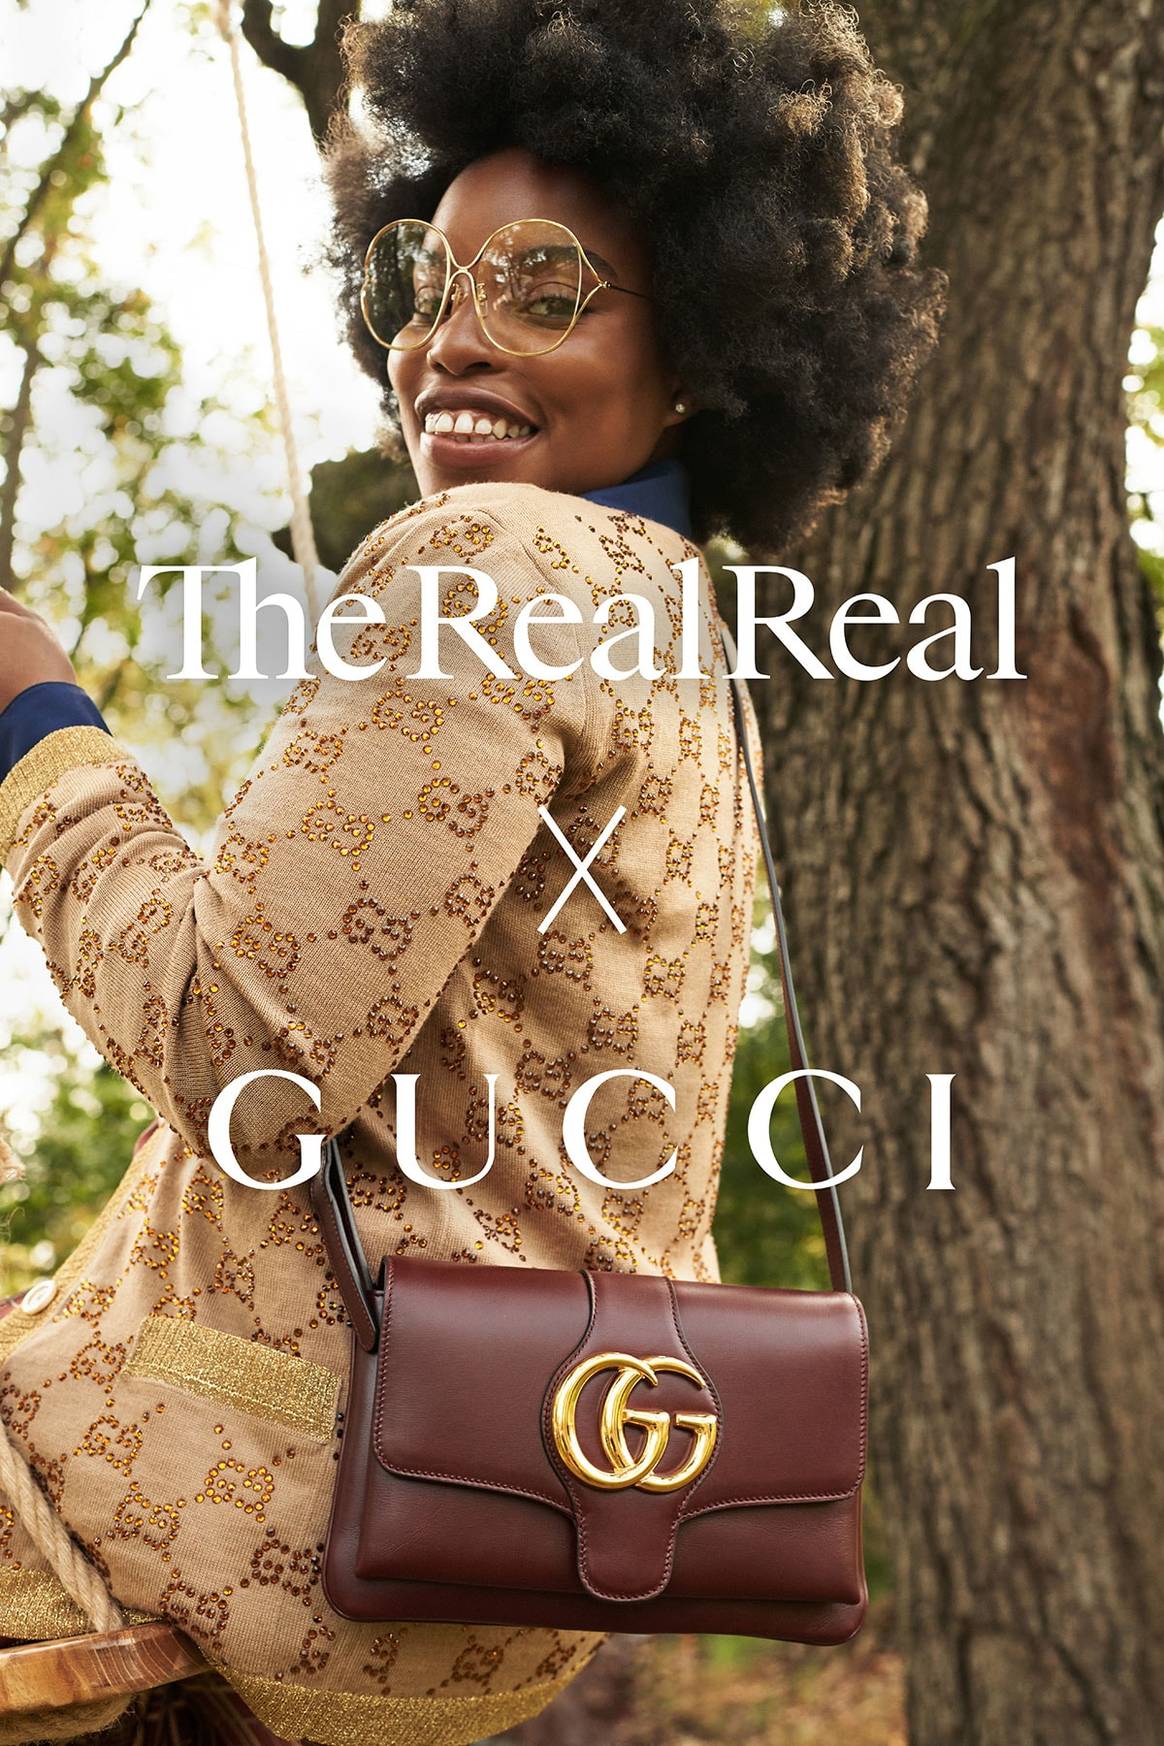 Gucci se asocia con The RealReal para impulsar “el lujo” de segunda mano y la circularidad